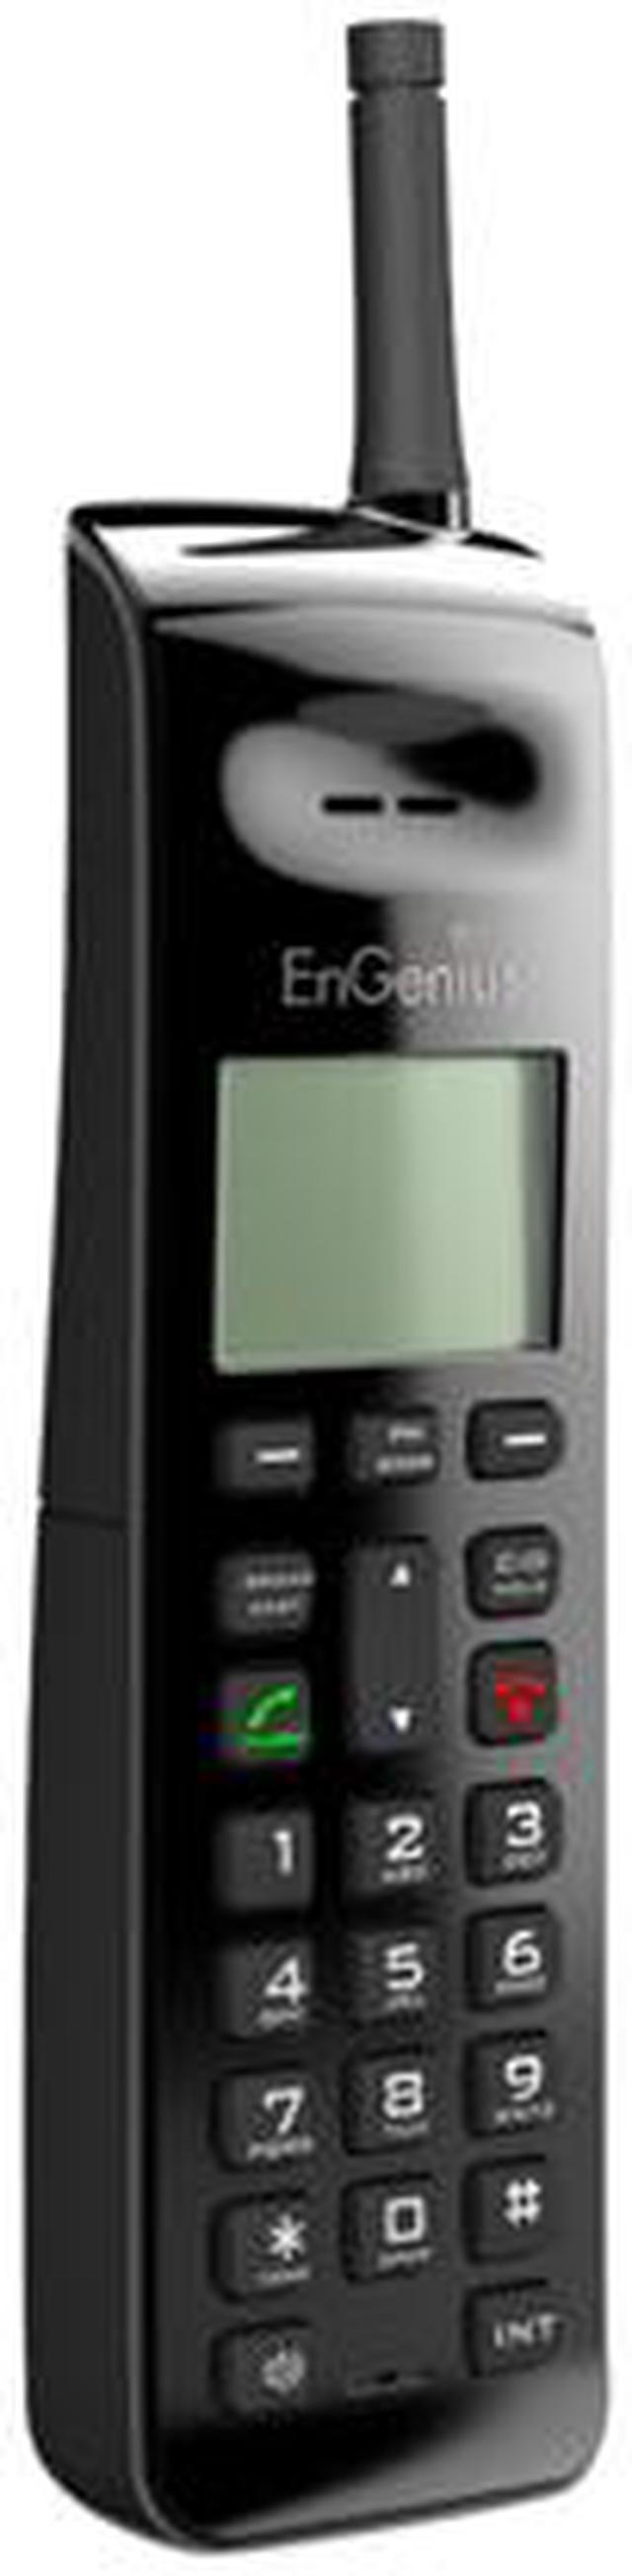 Engenius FREESTYL Extreme Range Cordless Phone System